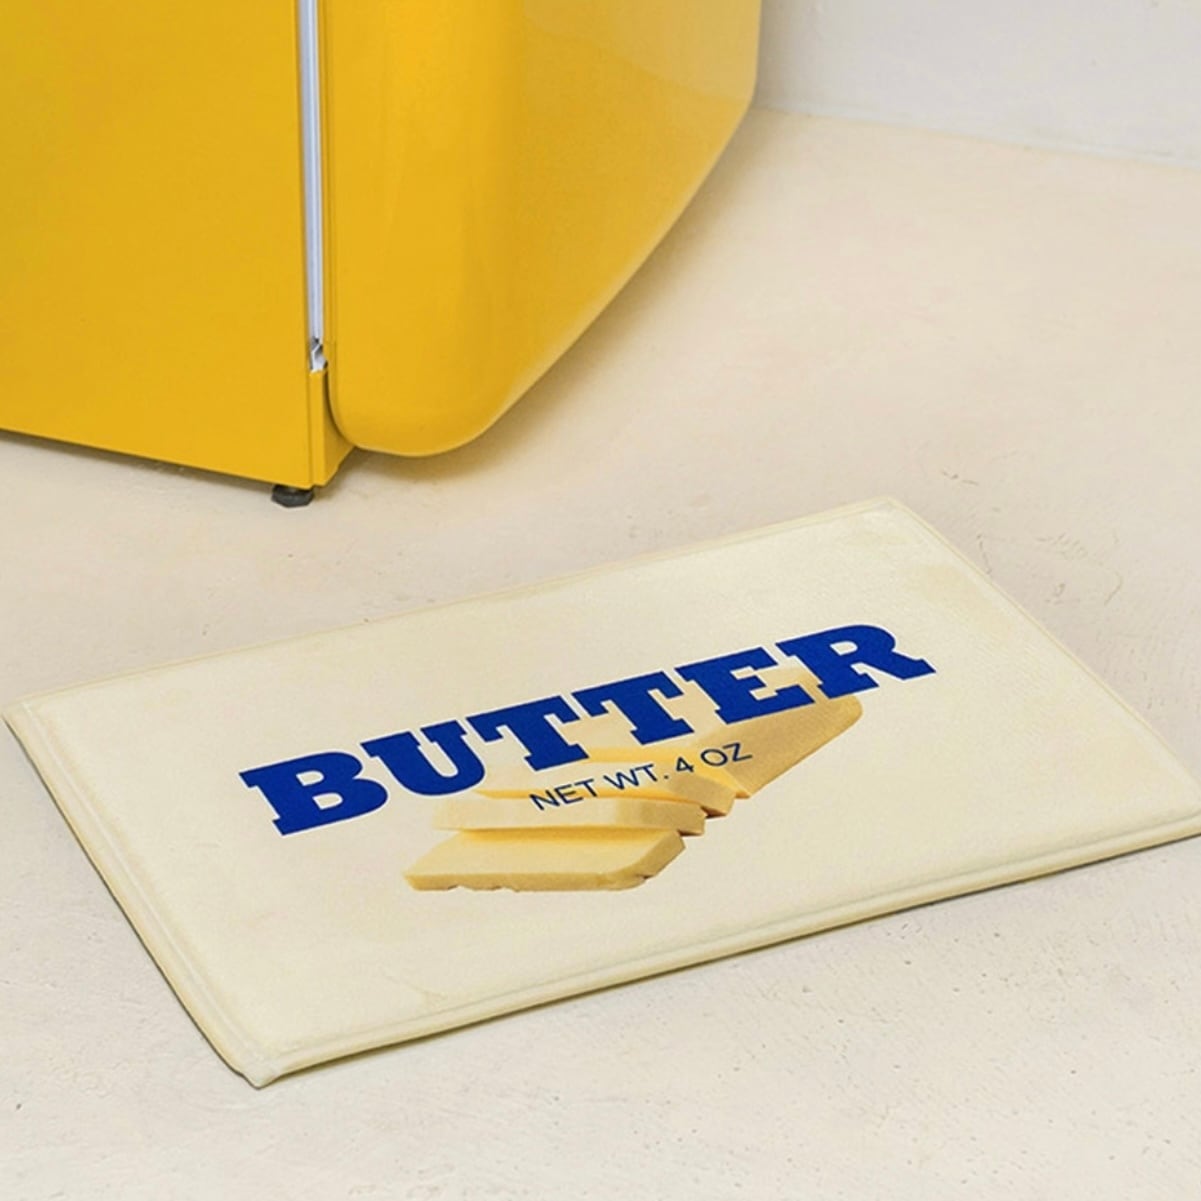 butter mat / バター フットマット ラグ  ポイント レタリング カーペット 韓国インテリア雑貨